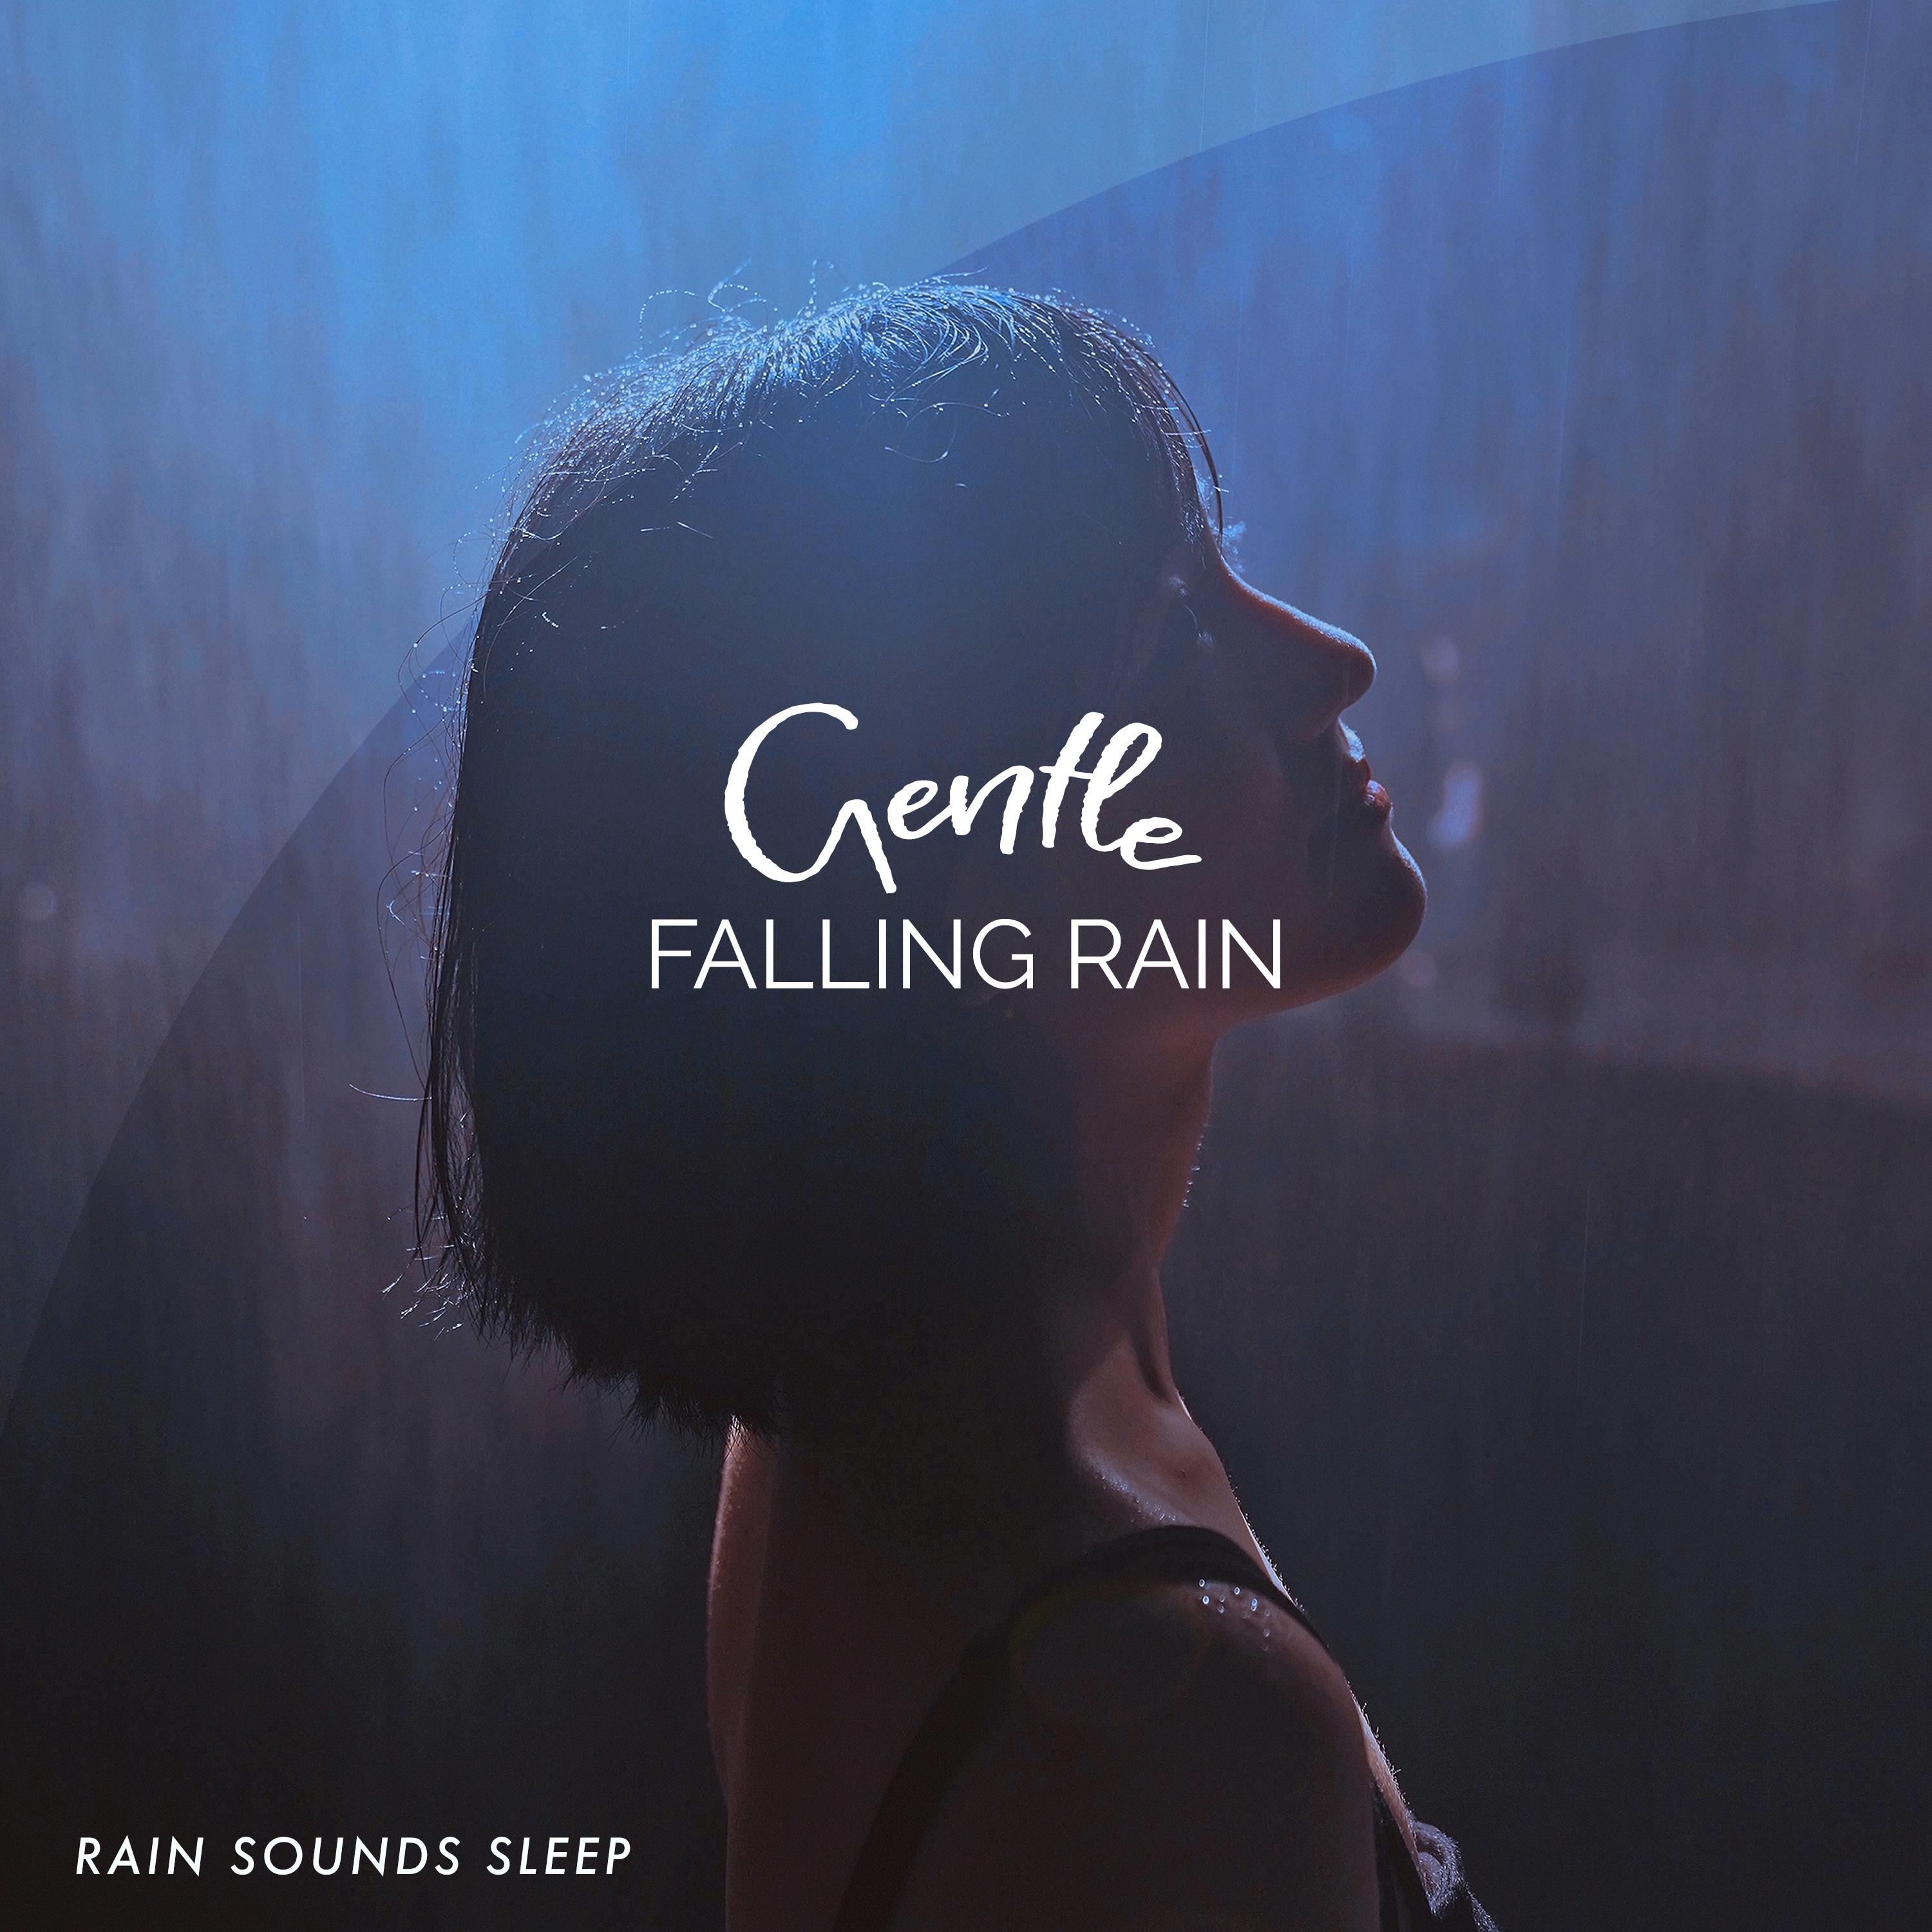 Gentle Falling Rain